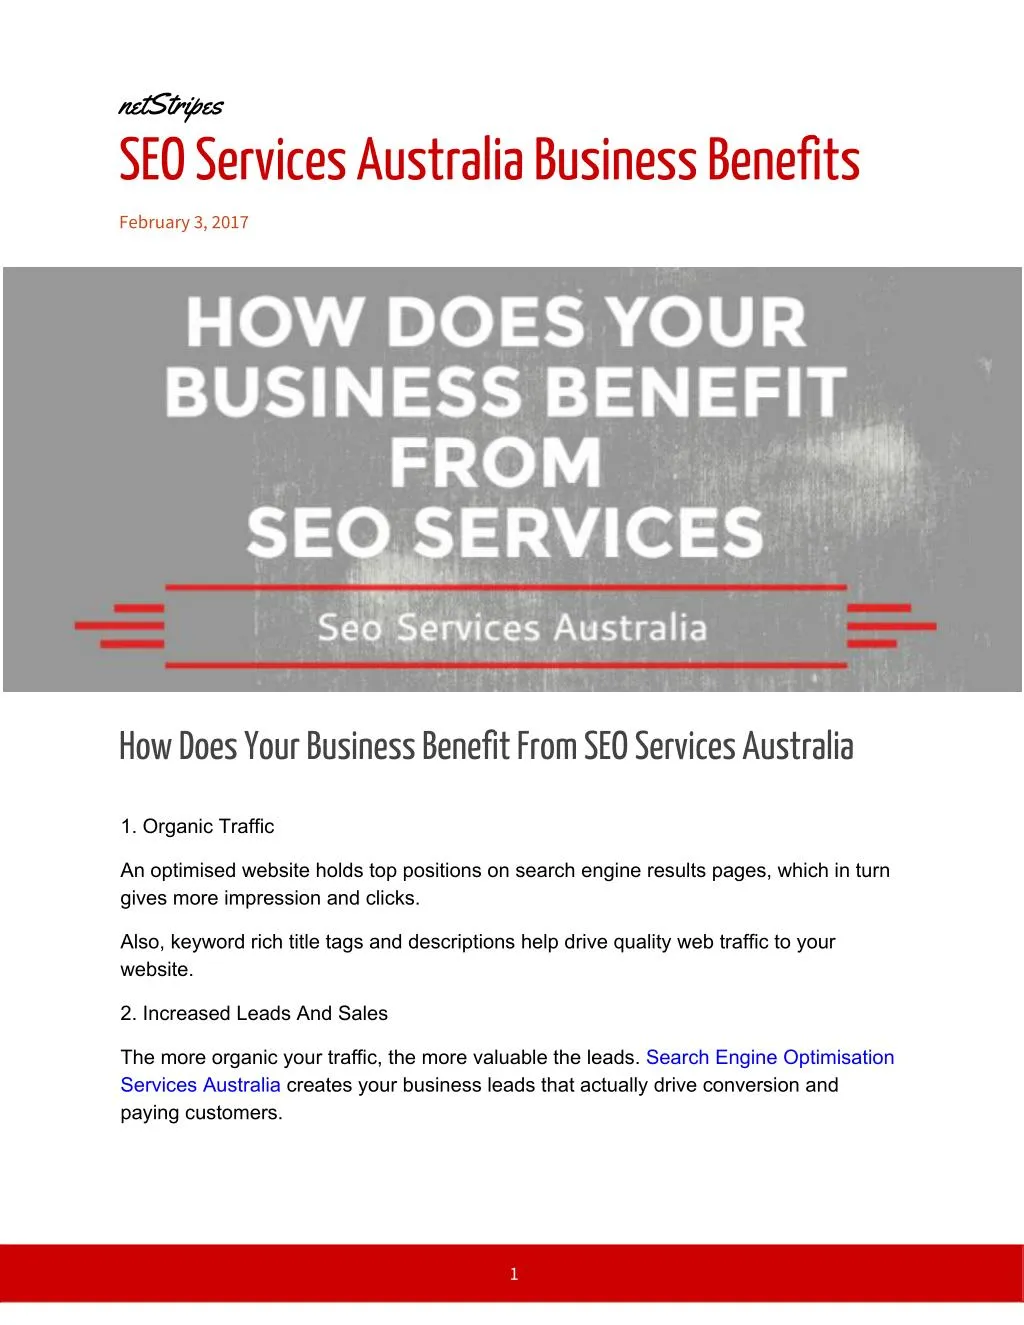 netstripes seo services australia business